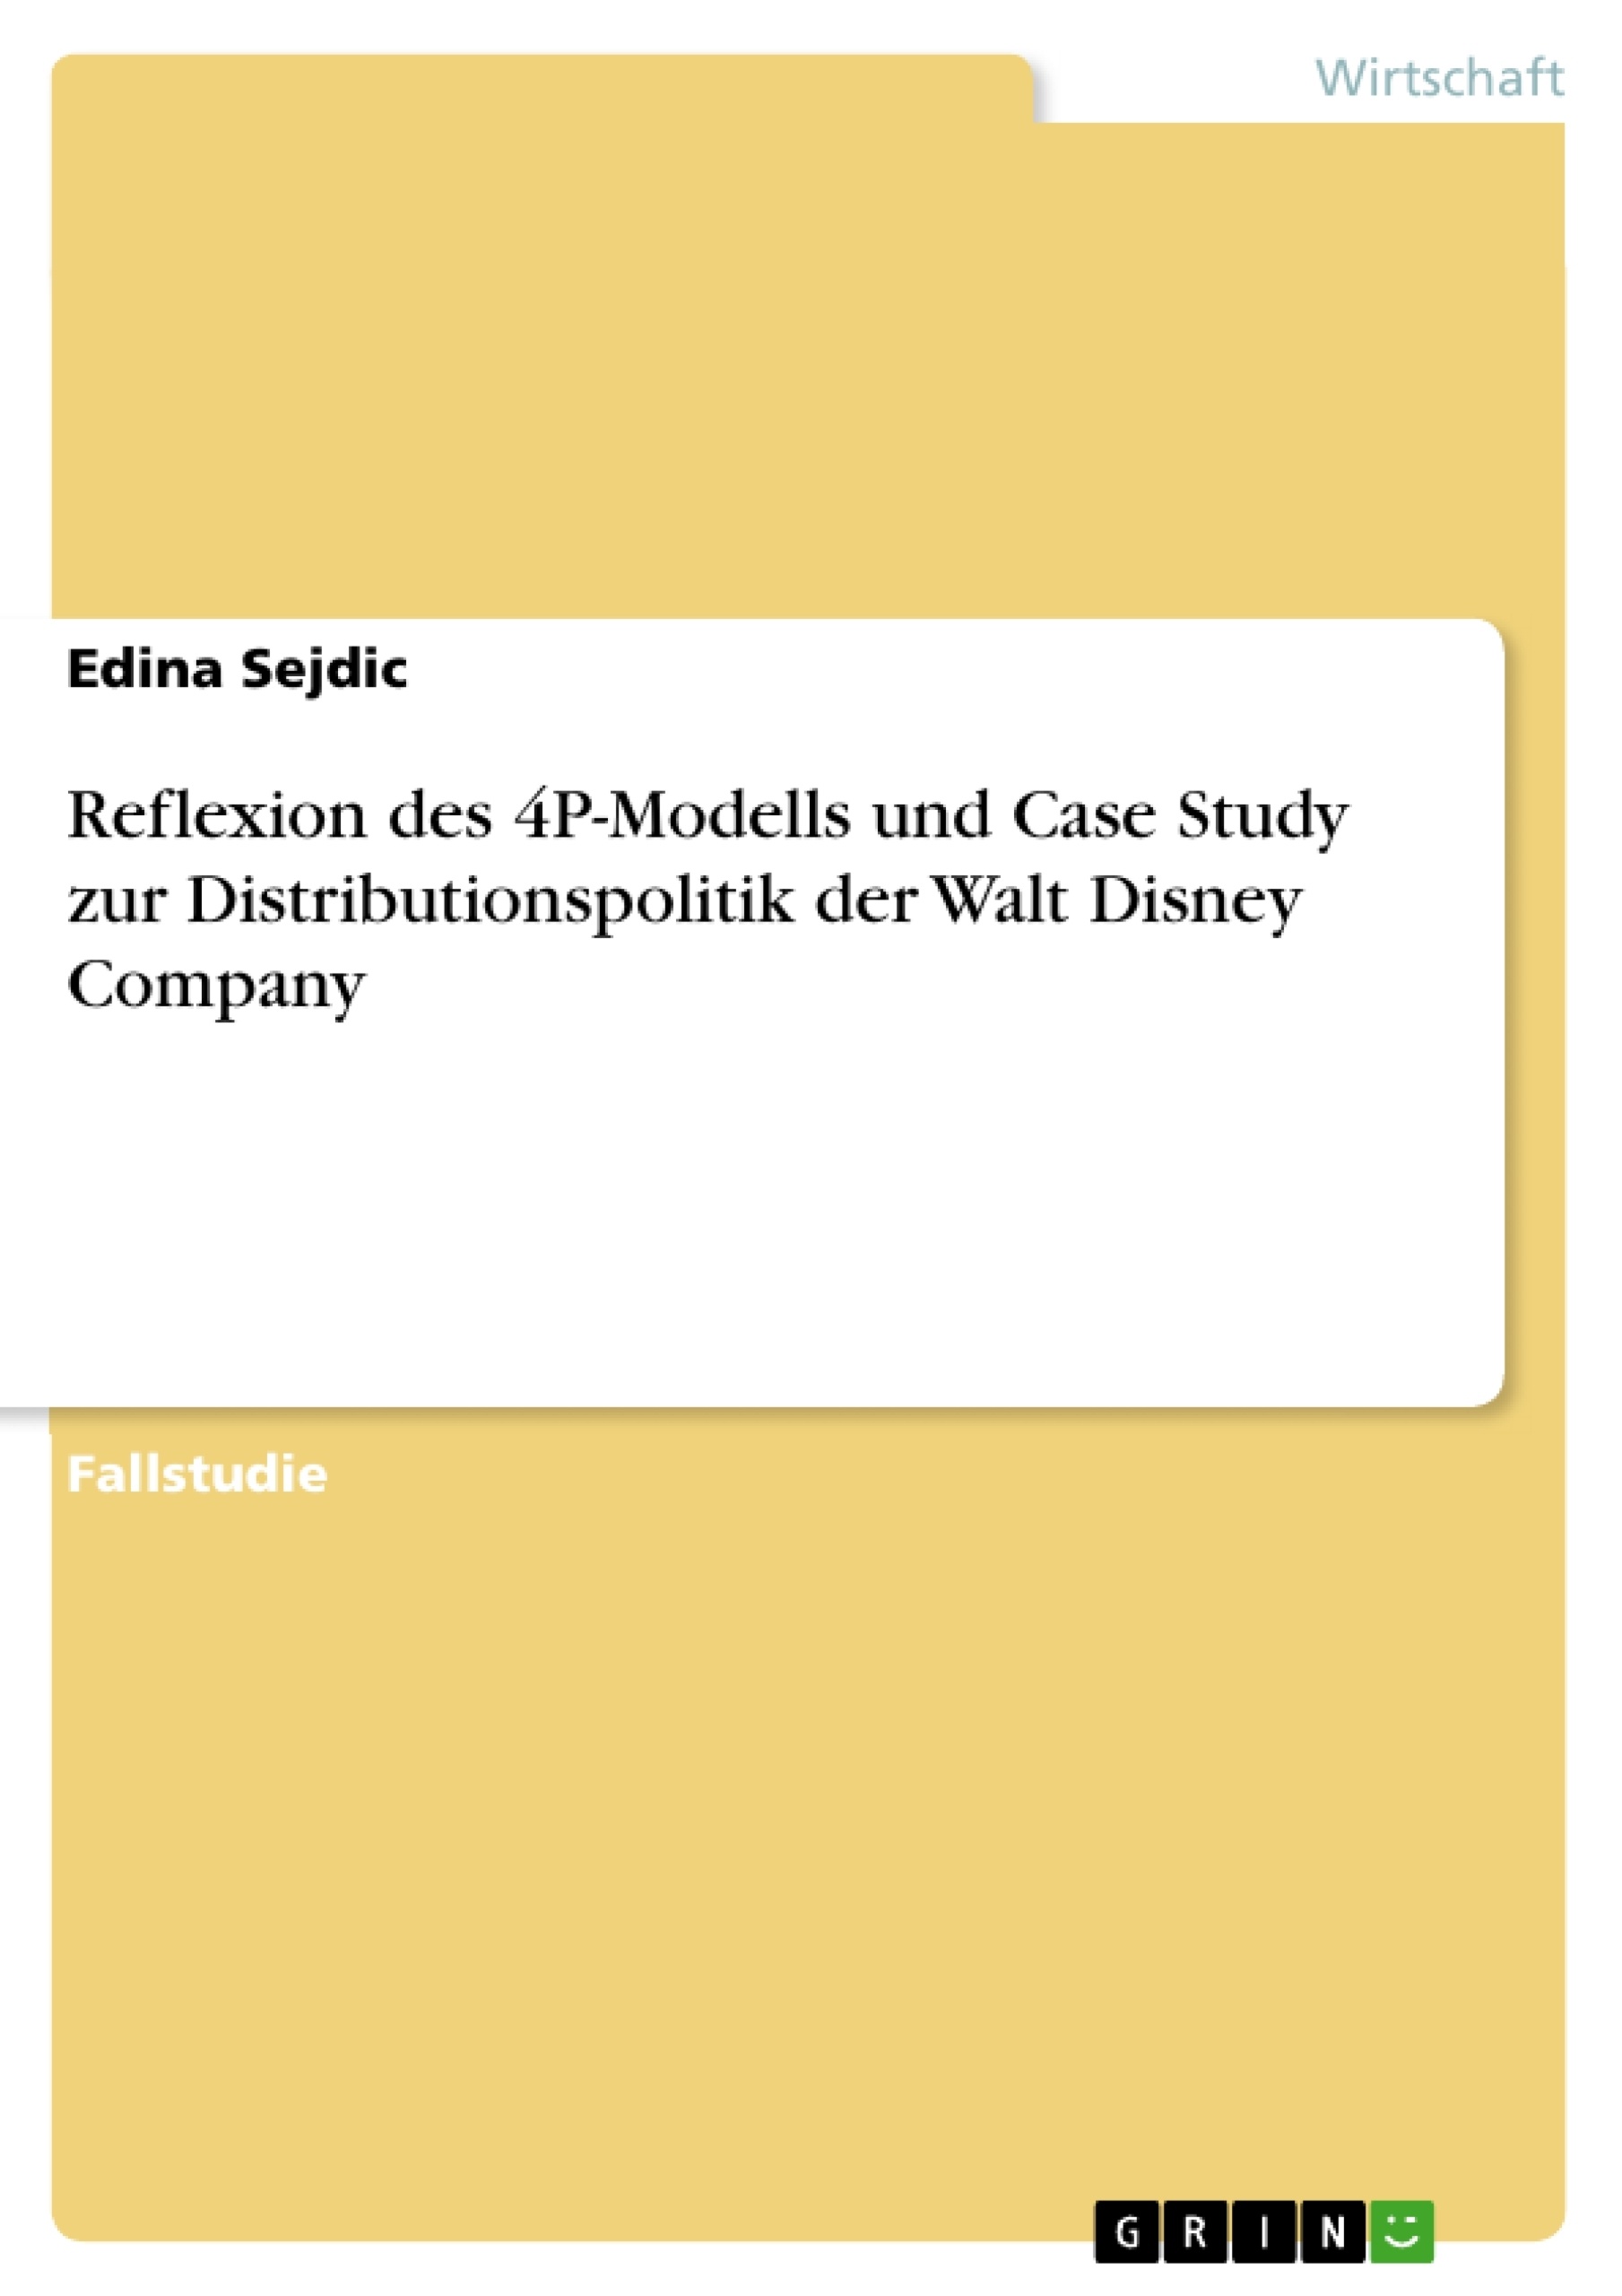 Título: Reflexion des 4P-Modells und Case Study zur Distributionspolitik der Walt Disney Company